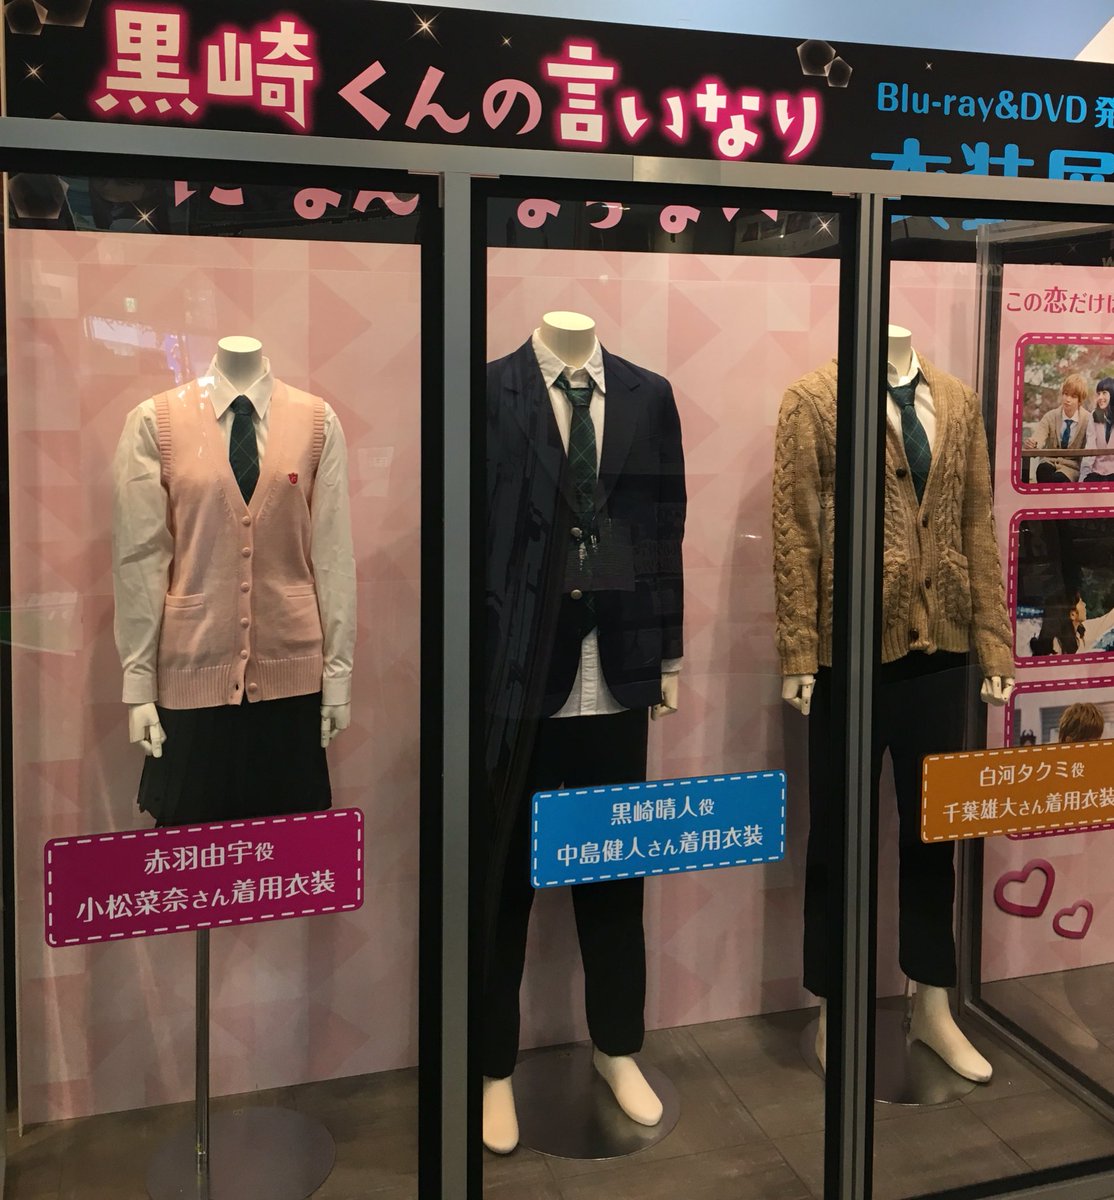 Shibuya Tsutaya Music Movie على تويتر 本日入荷 中島健人 さん 小松菜奈 さん 千葉雄大 さん出演の大ヒット映画 黒崎くんの言いなりになんてならない 特典はハート型シークレットメモパッド また本日から来週8 22まで1fにて衣装展開催中です